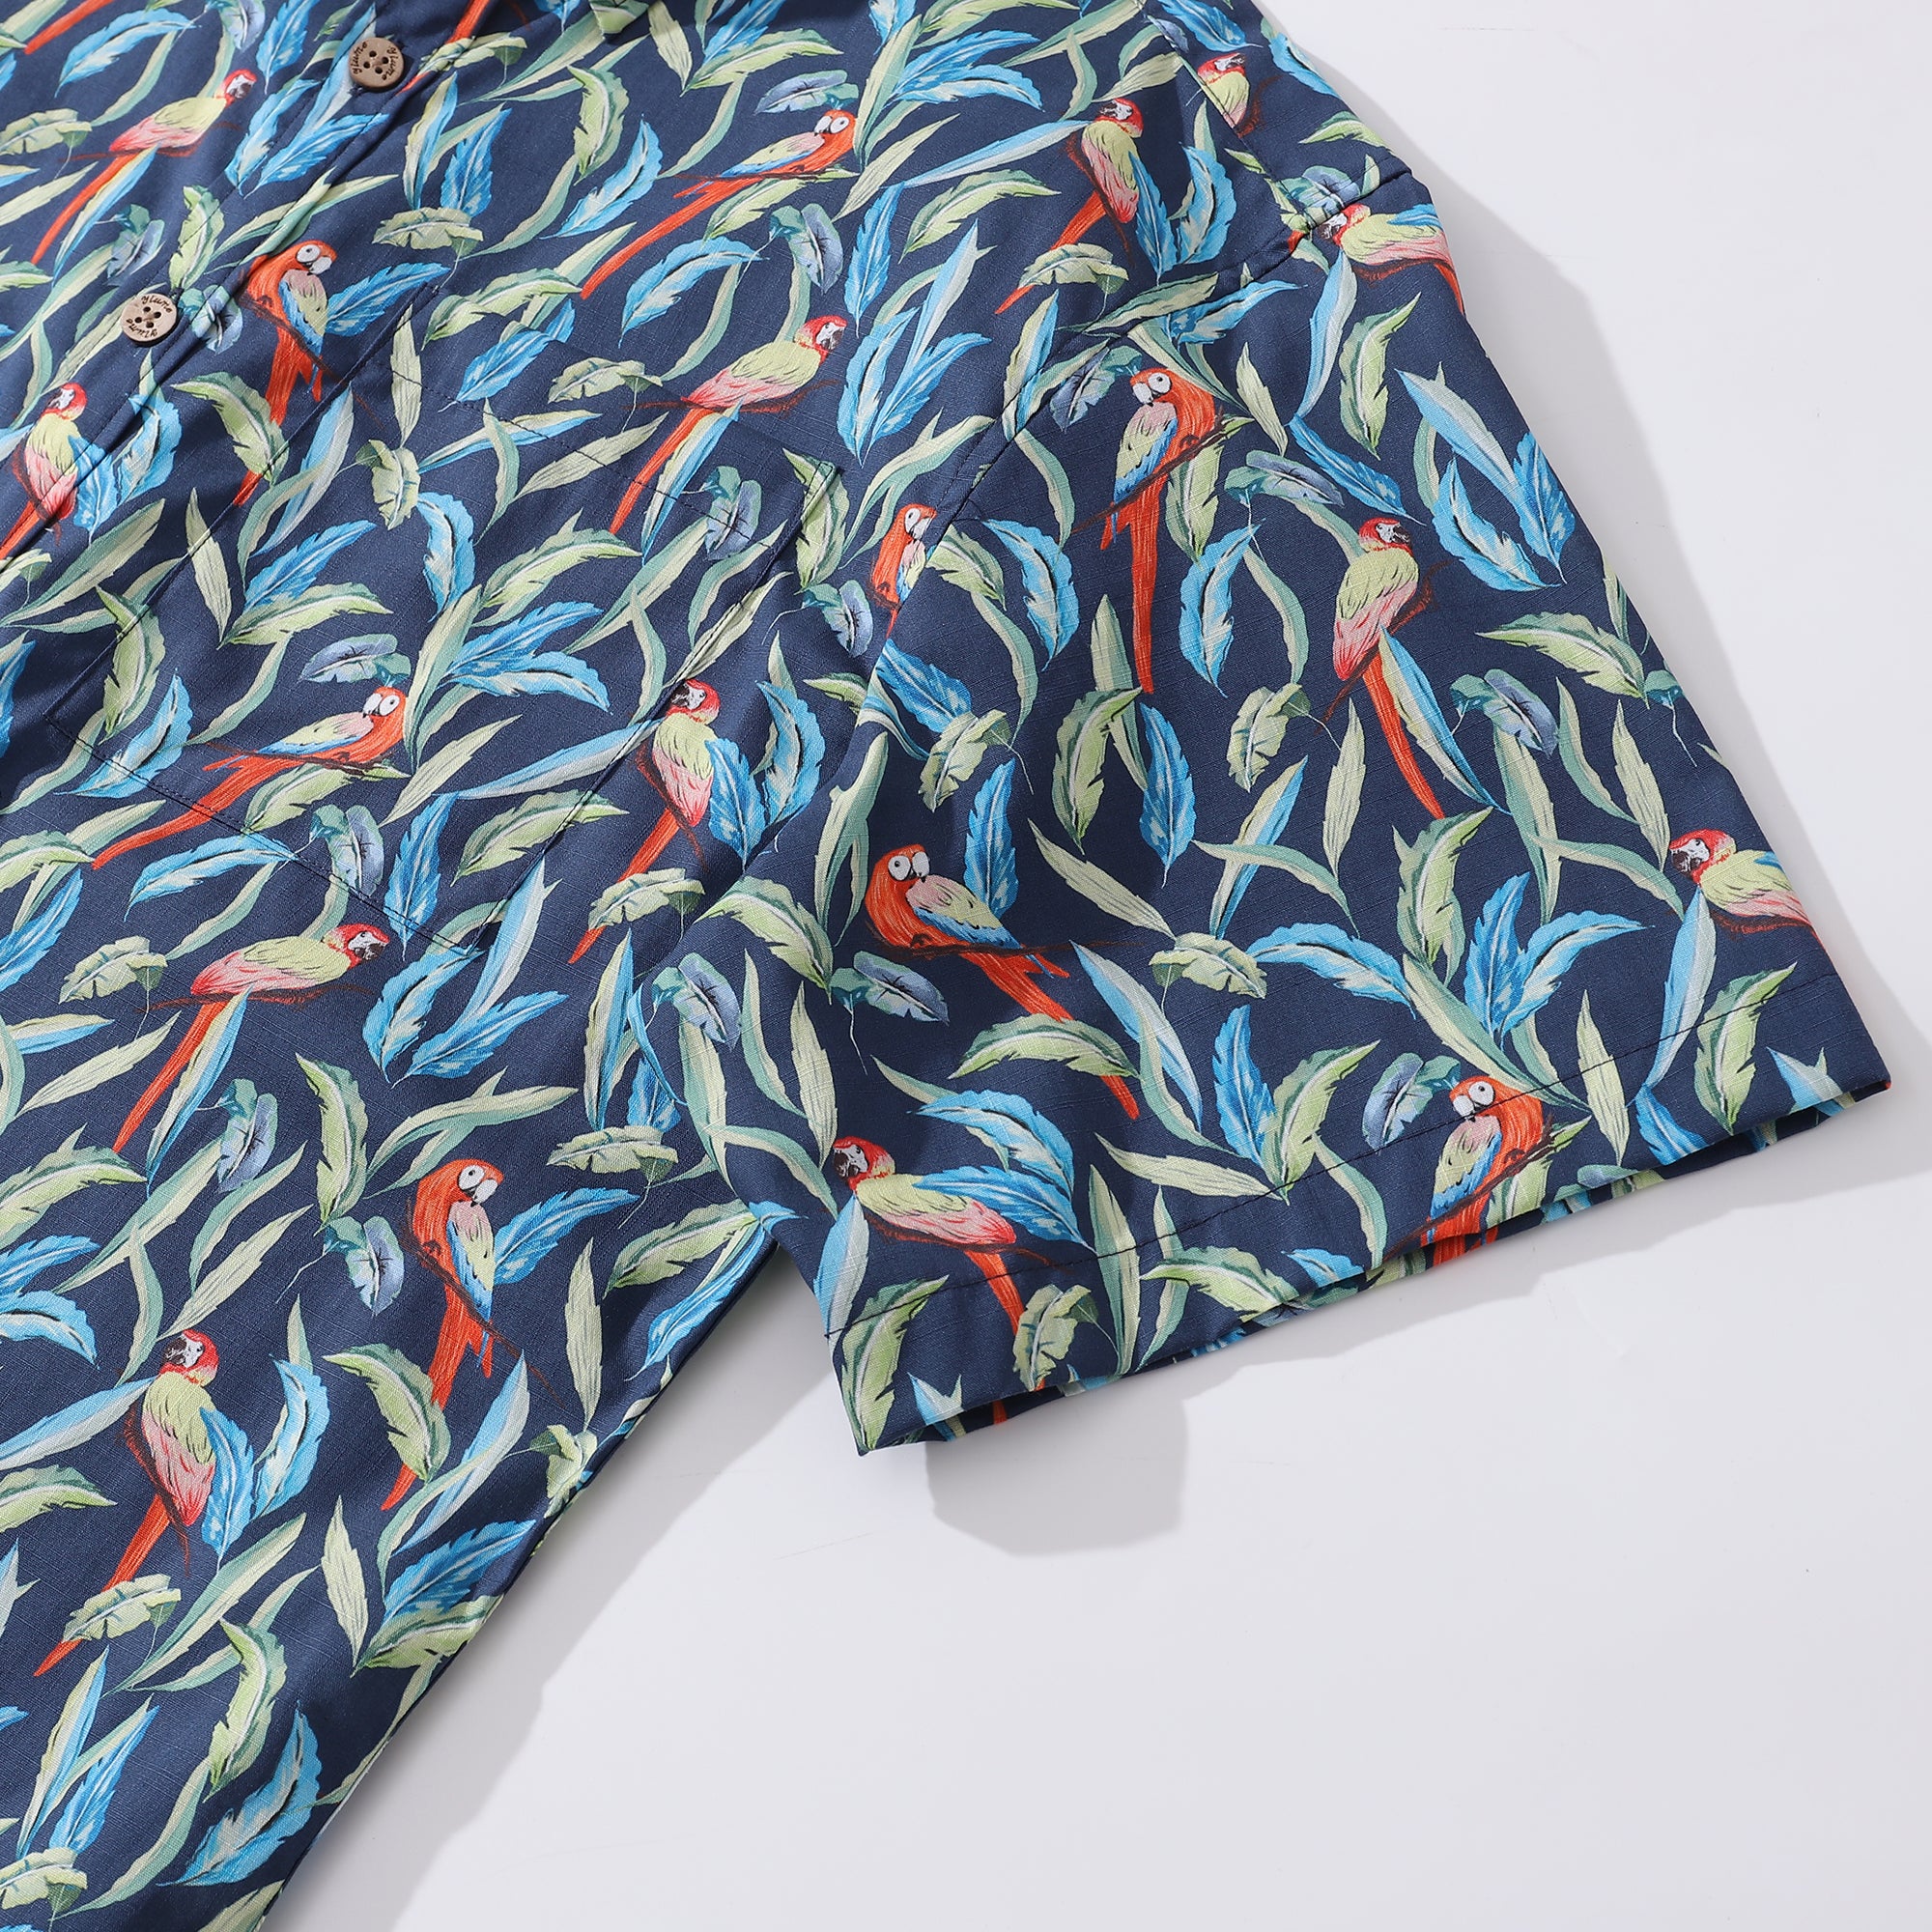 Hawaiian Shirt For Men Jungle Parrot Button-down Shirt Short Sleeve 100% Cotton Shirt